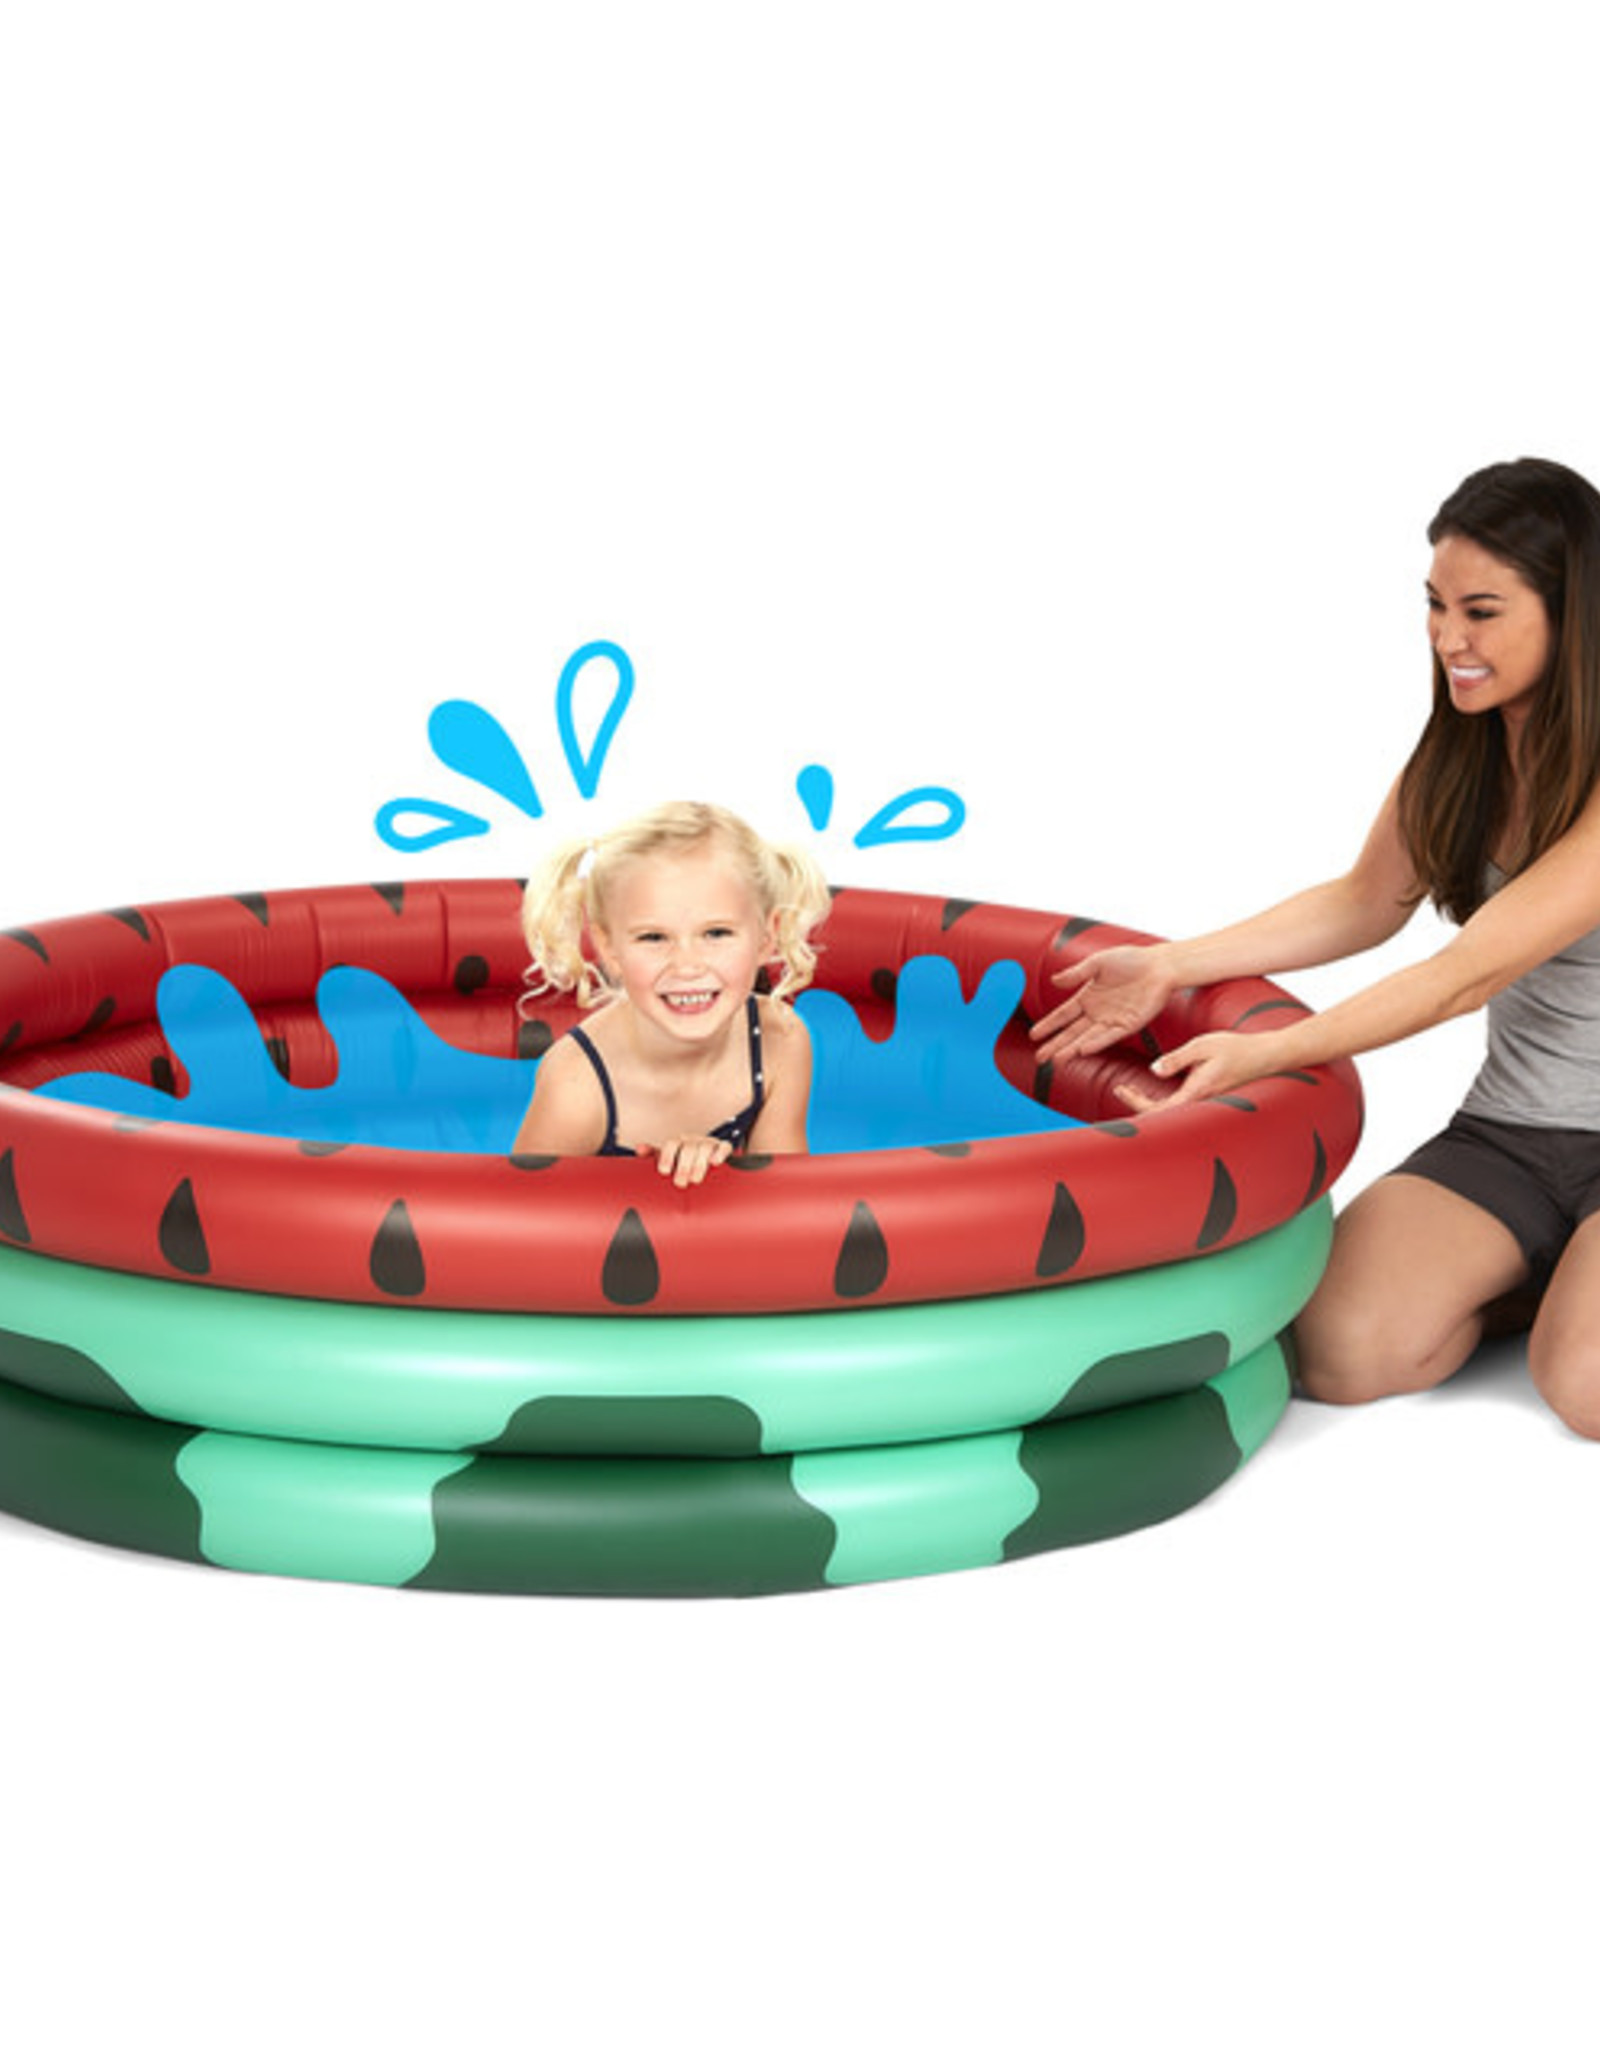 BigMouth Summer Watermelon -Kiddie Pool